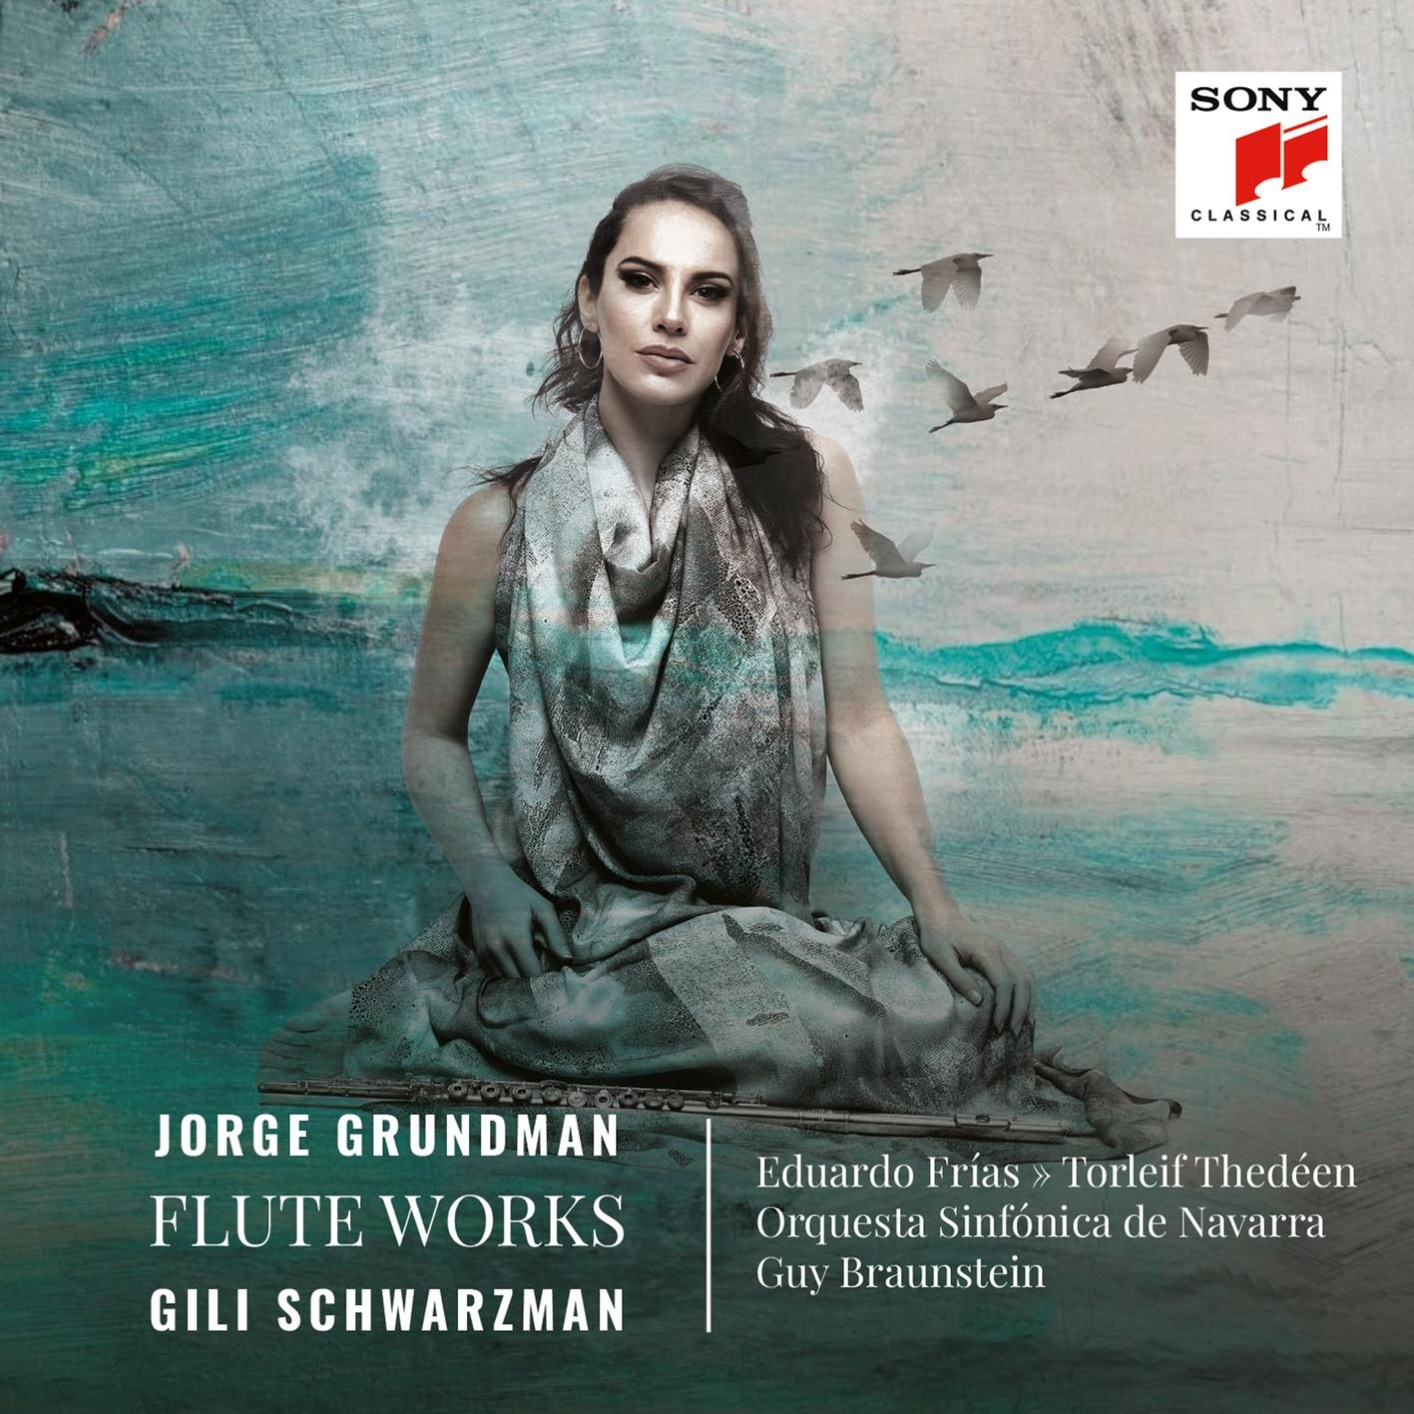 Gili Schwarzman, Orquesta Sinfonica de Navarra, Guy Braunstein - Jorge Grundman, Flute Works (2021) [FLAC 24bit/48kHz] Download